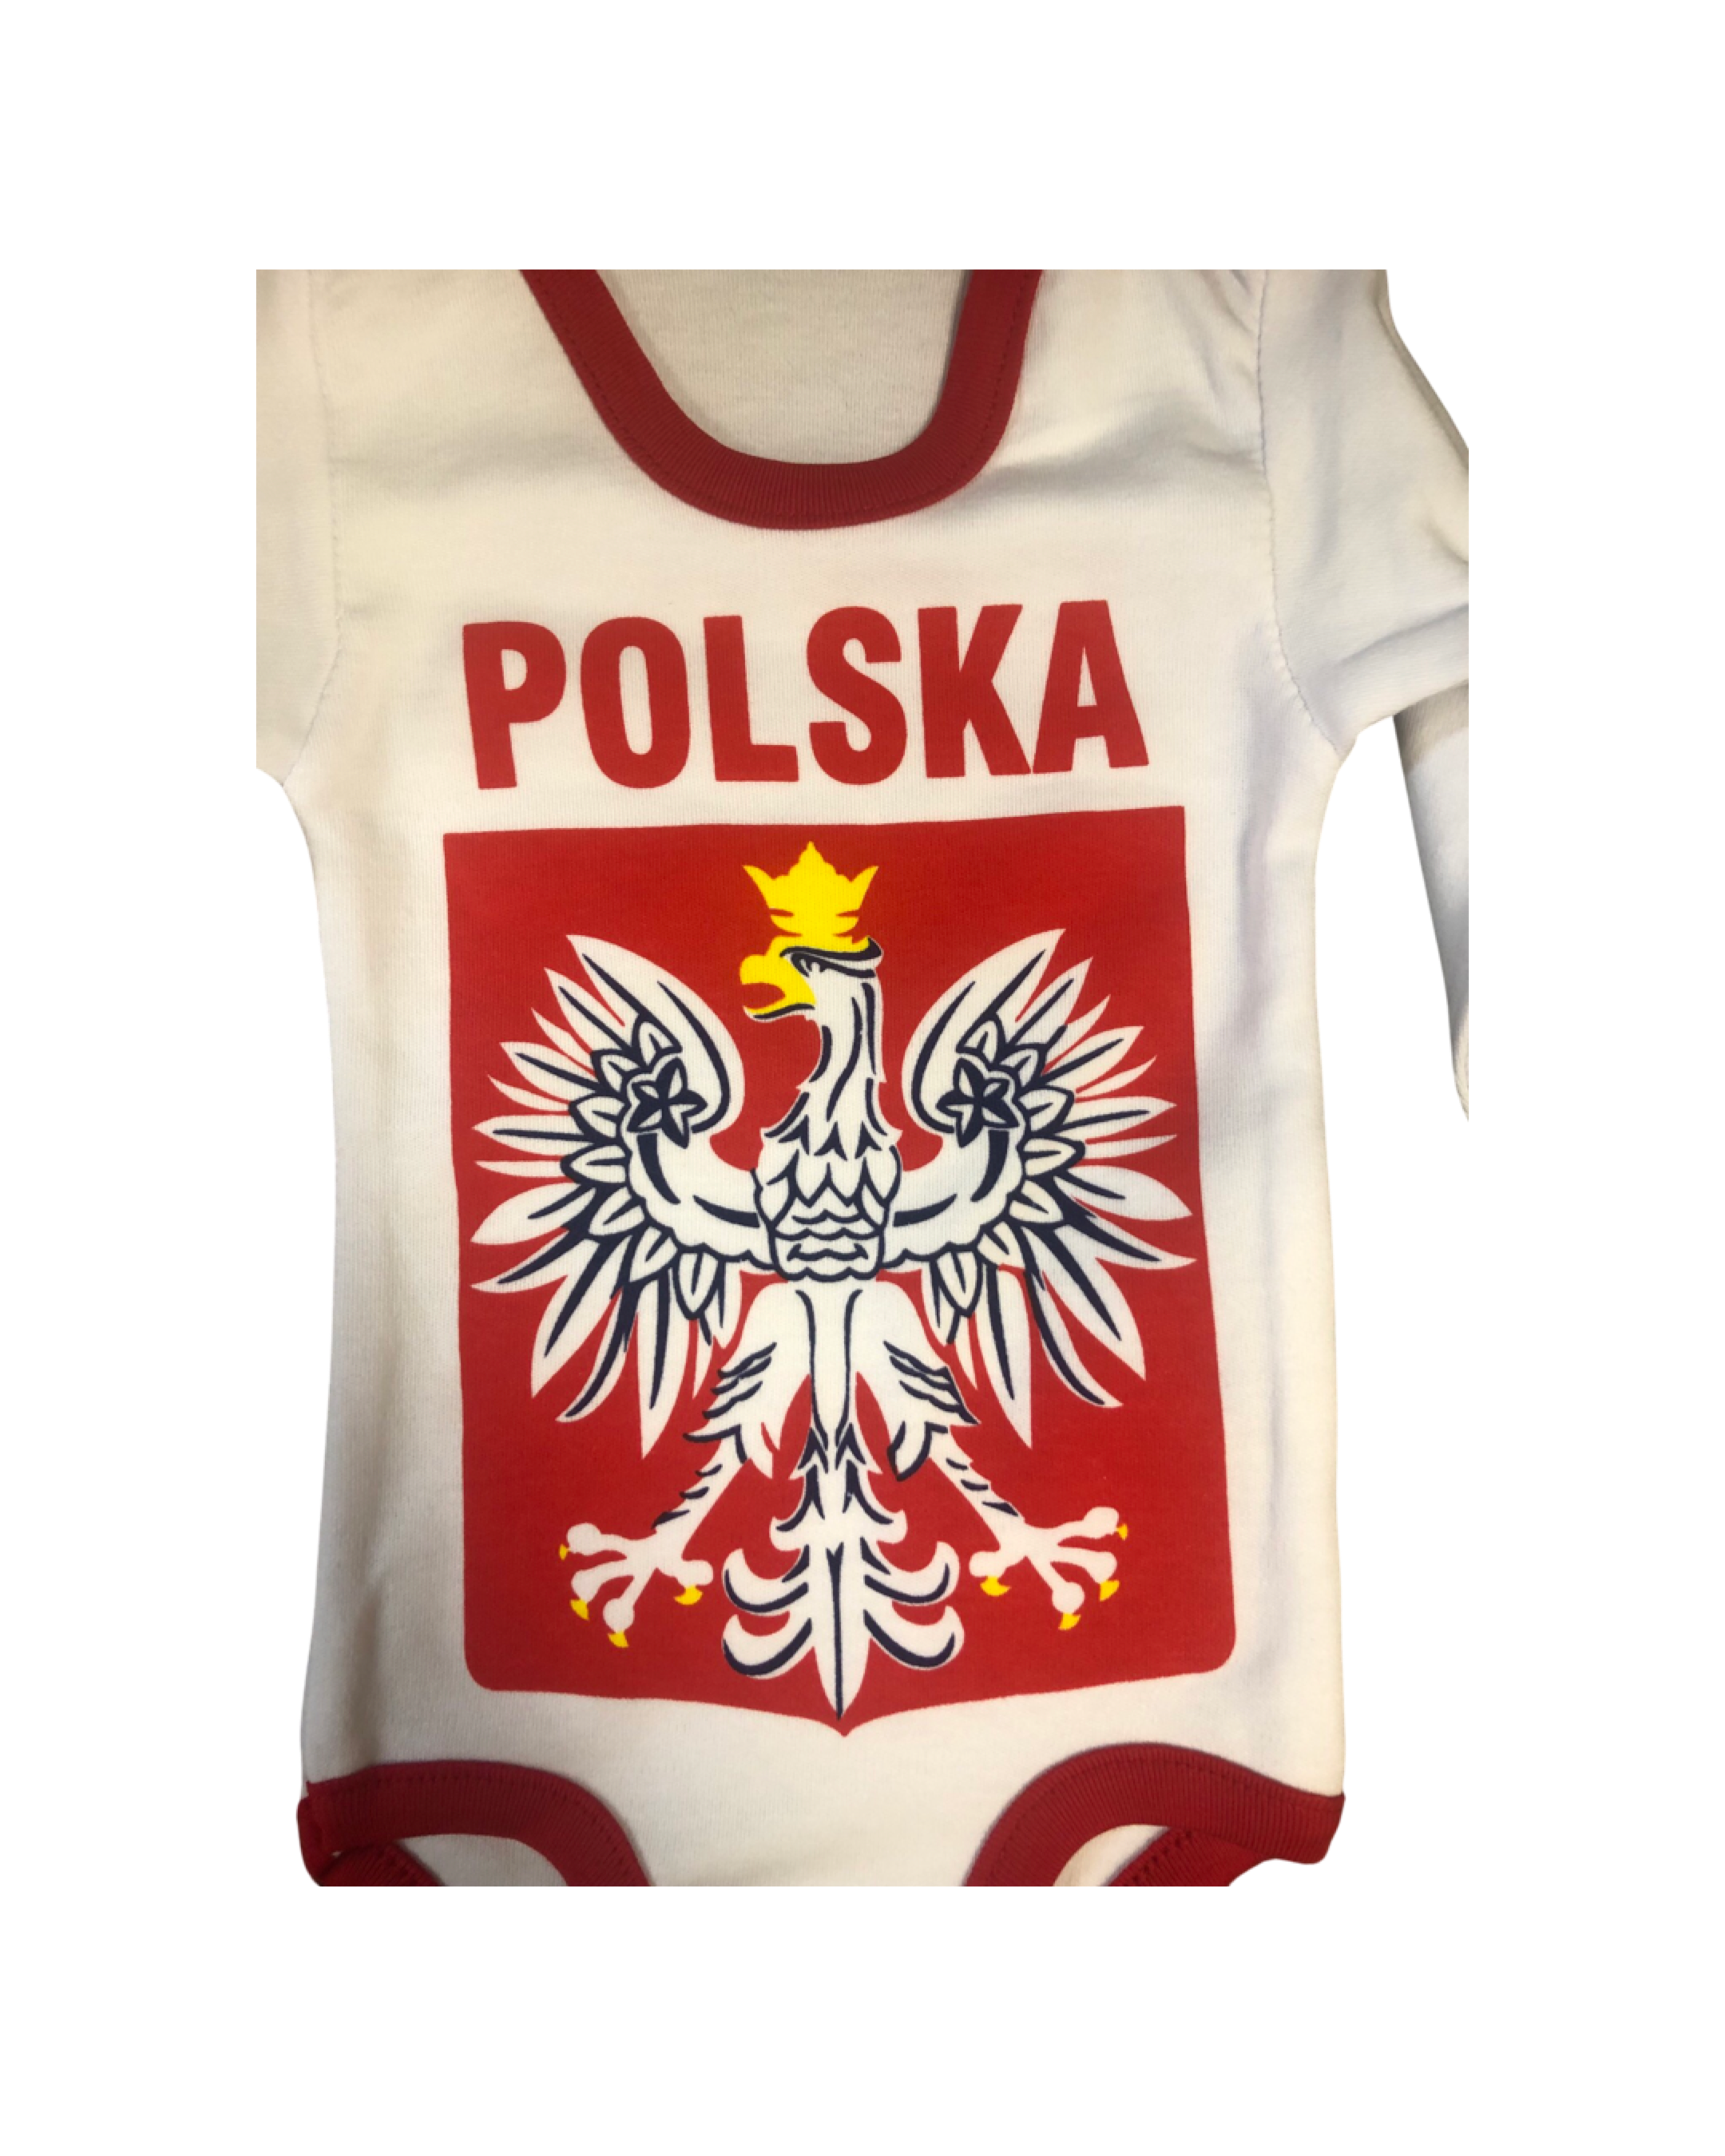 Polska Infant One-Piece Pajama